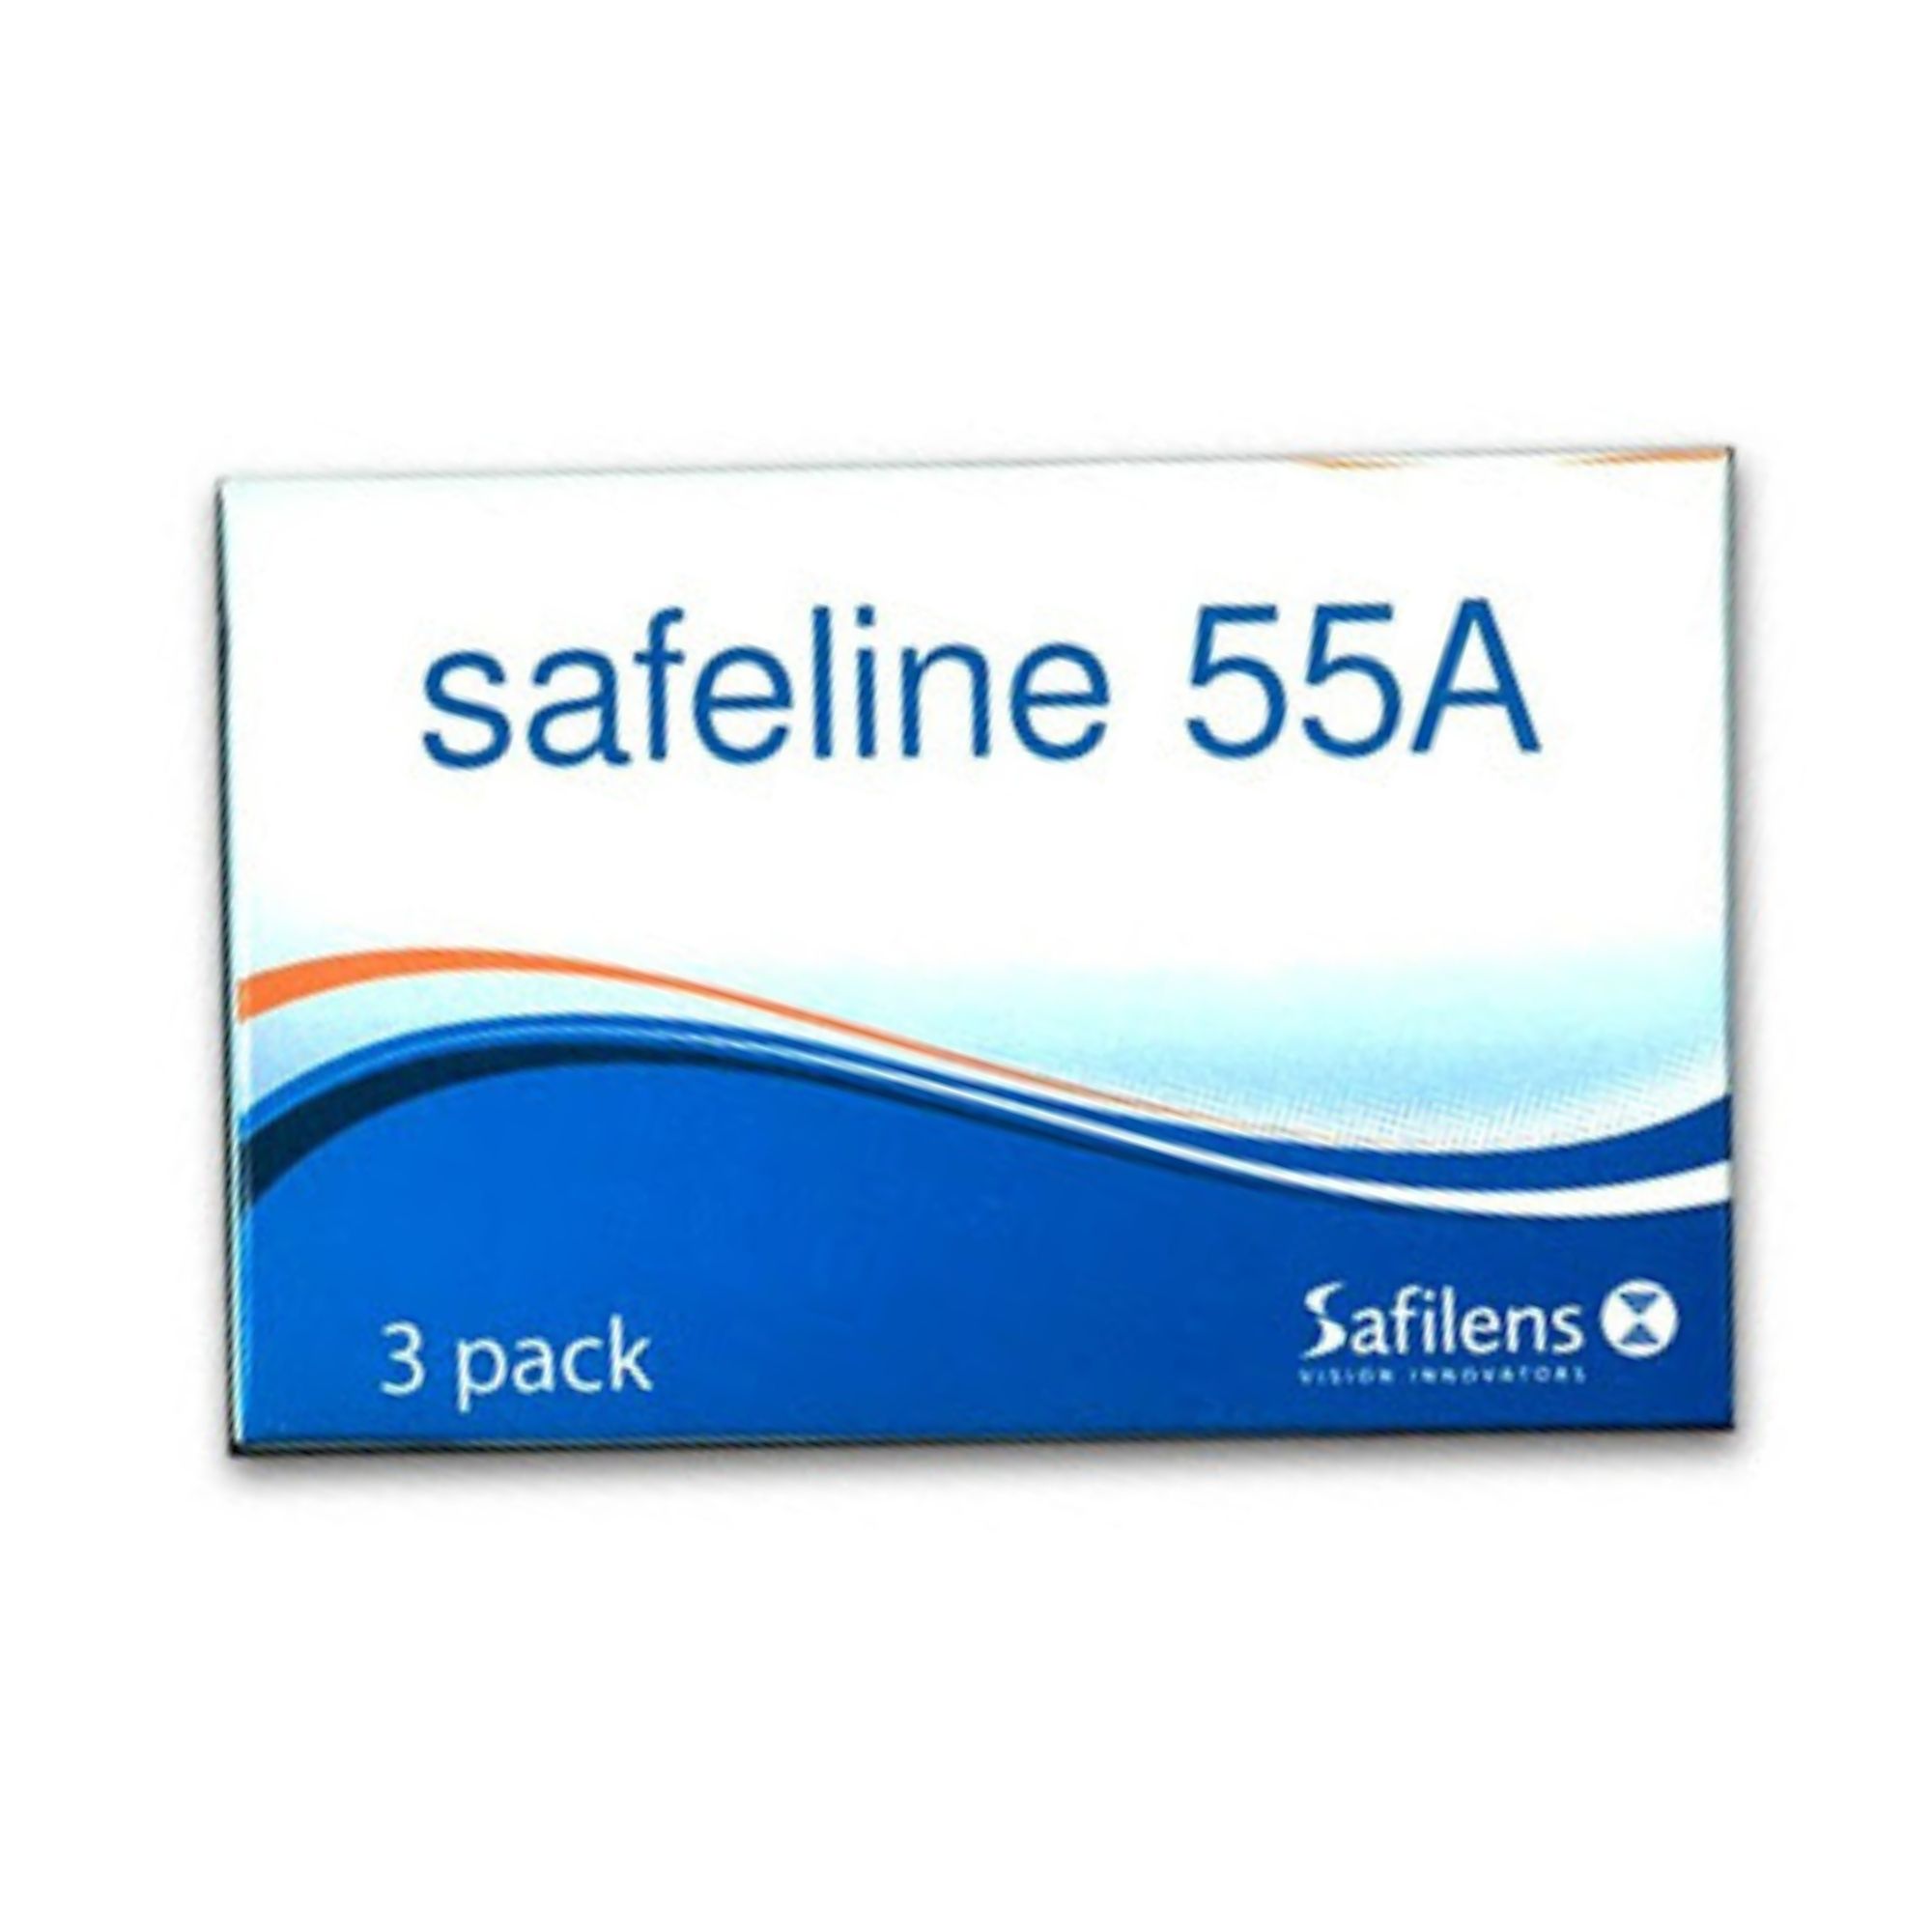 safeline55ada3lac